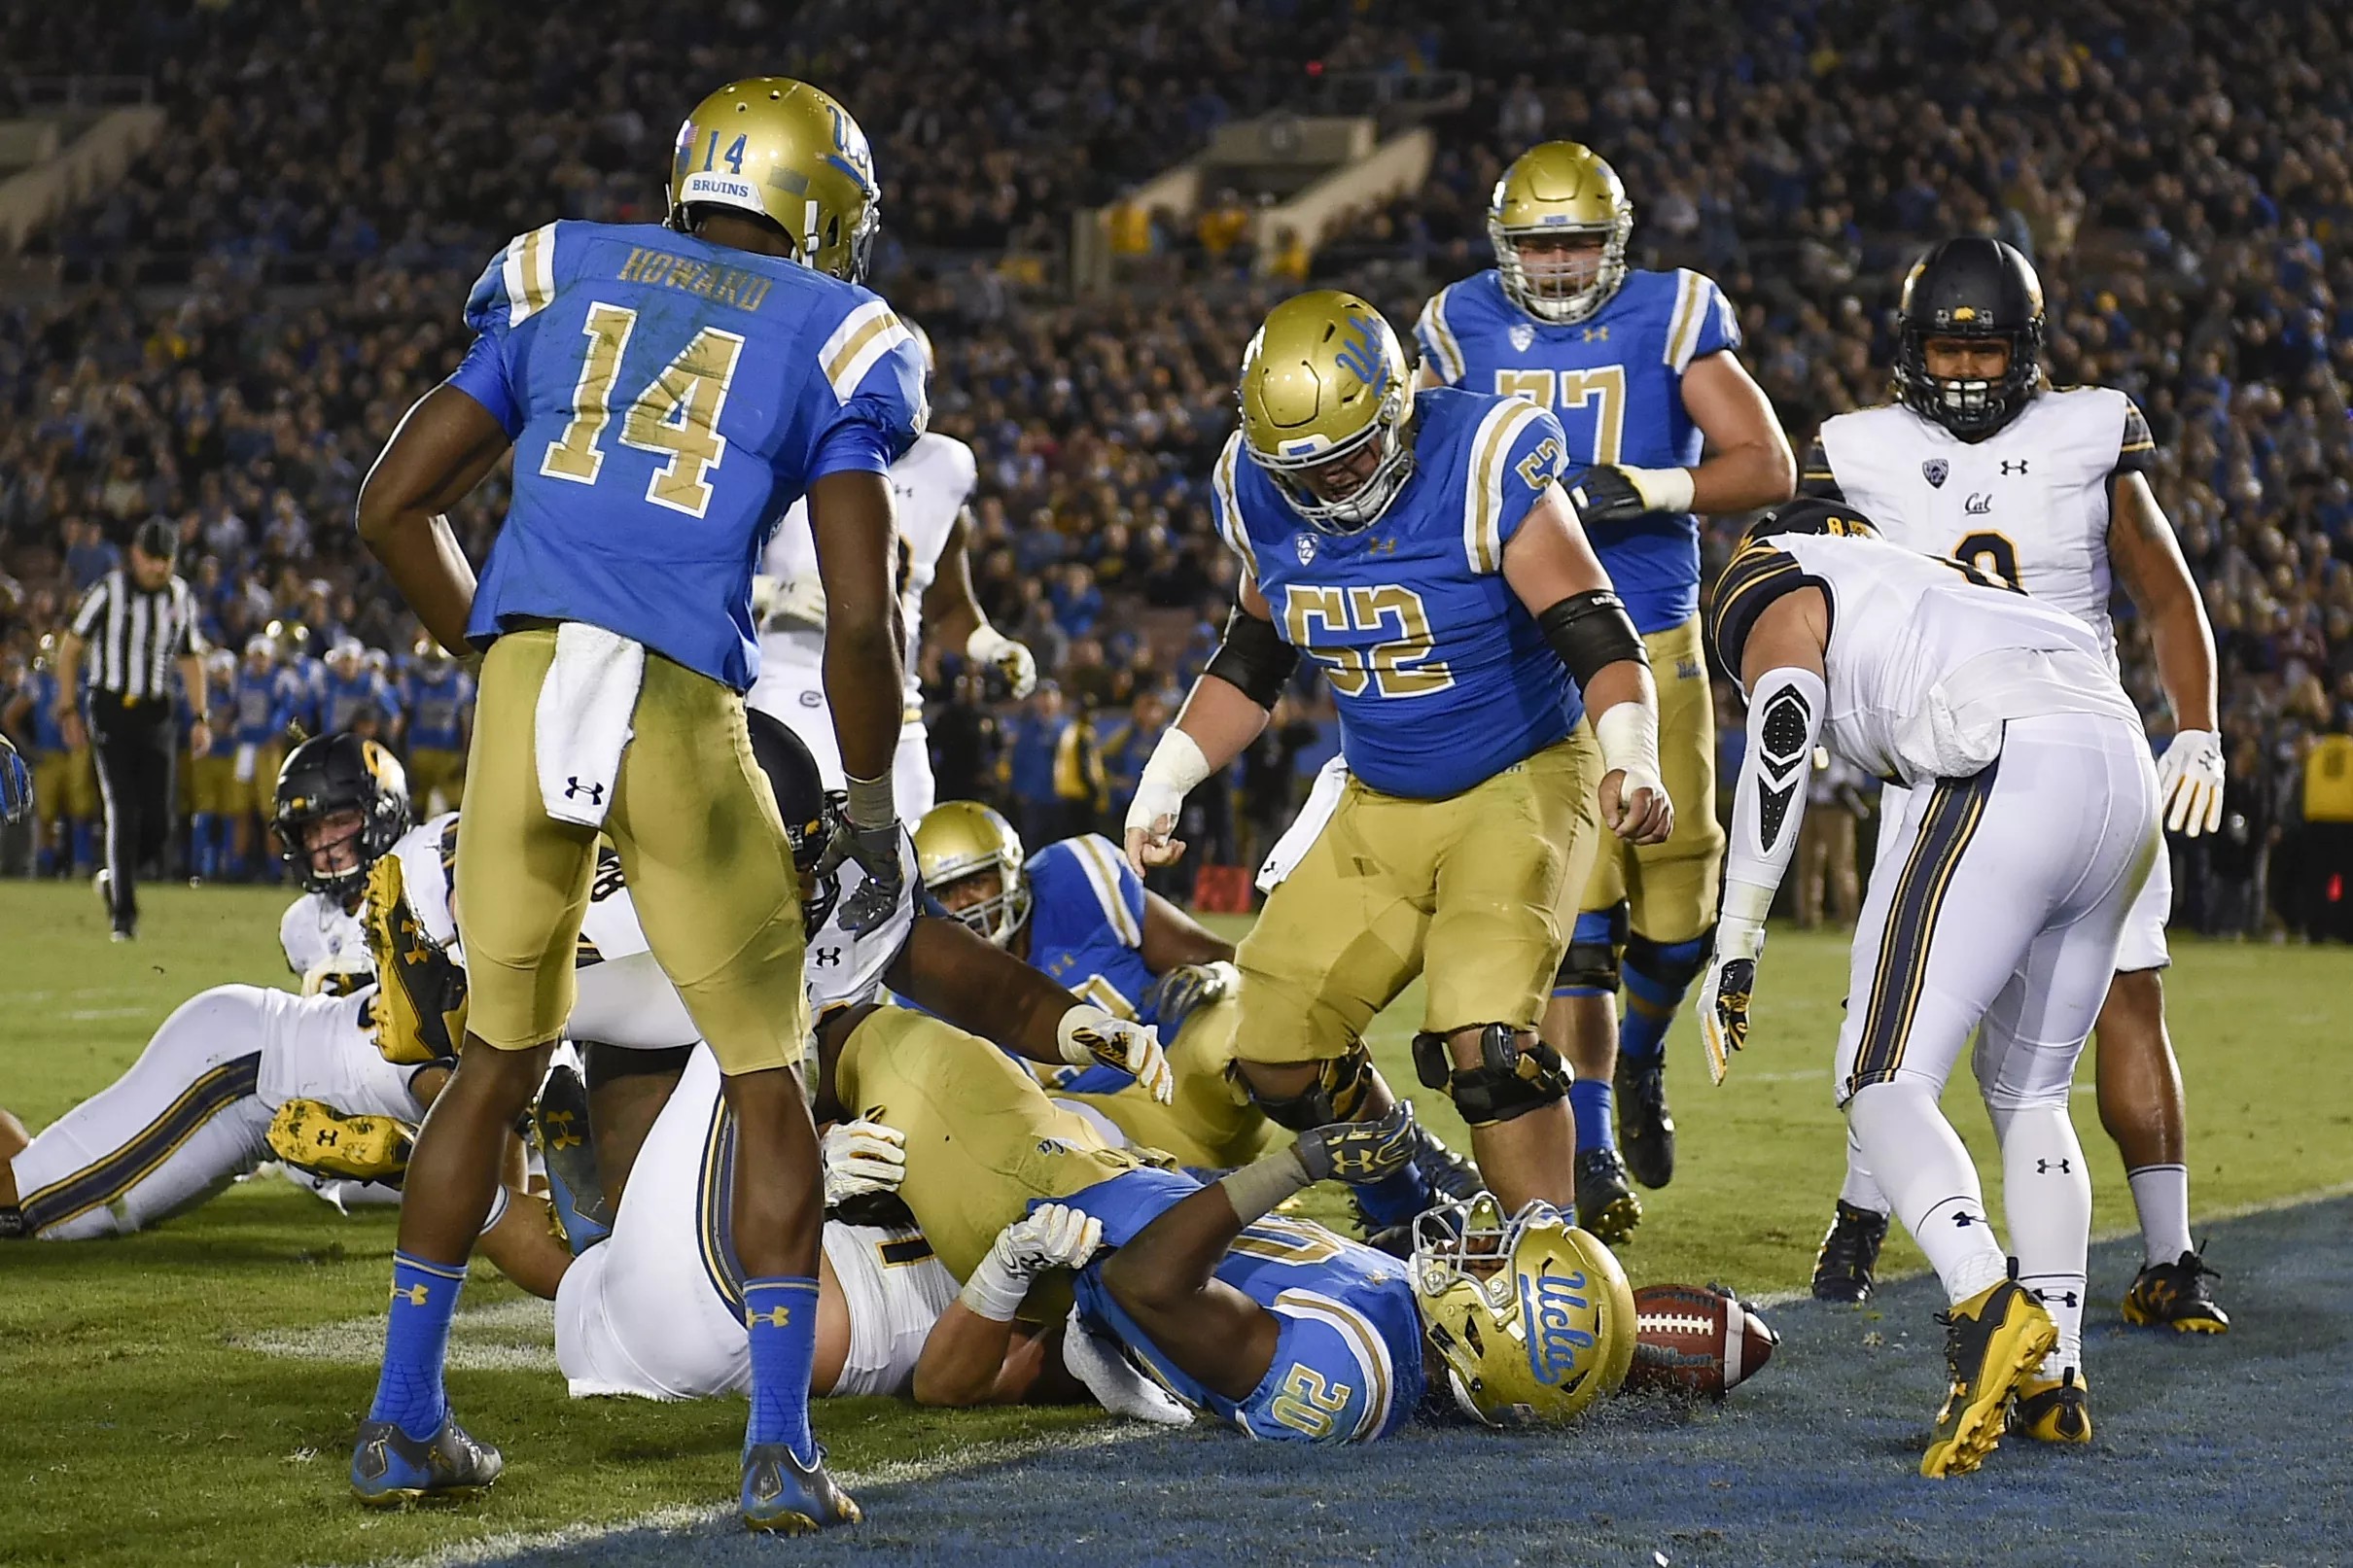 UCLA Football: UC Berkeley Post-Game Roundtable